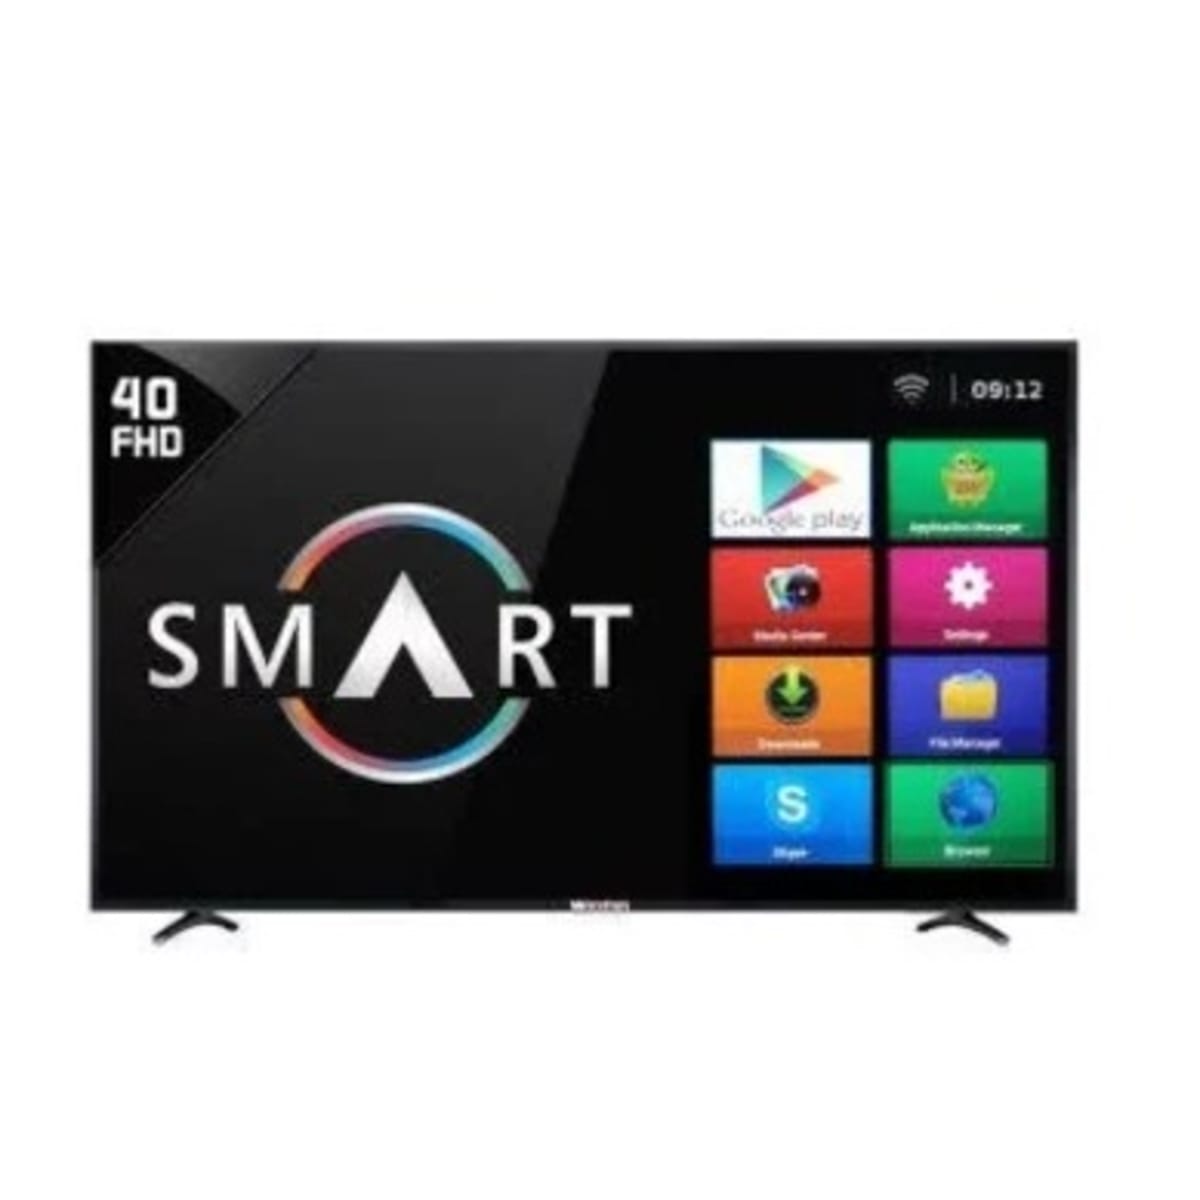 SAMSUNG TV 40 LED SMART